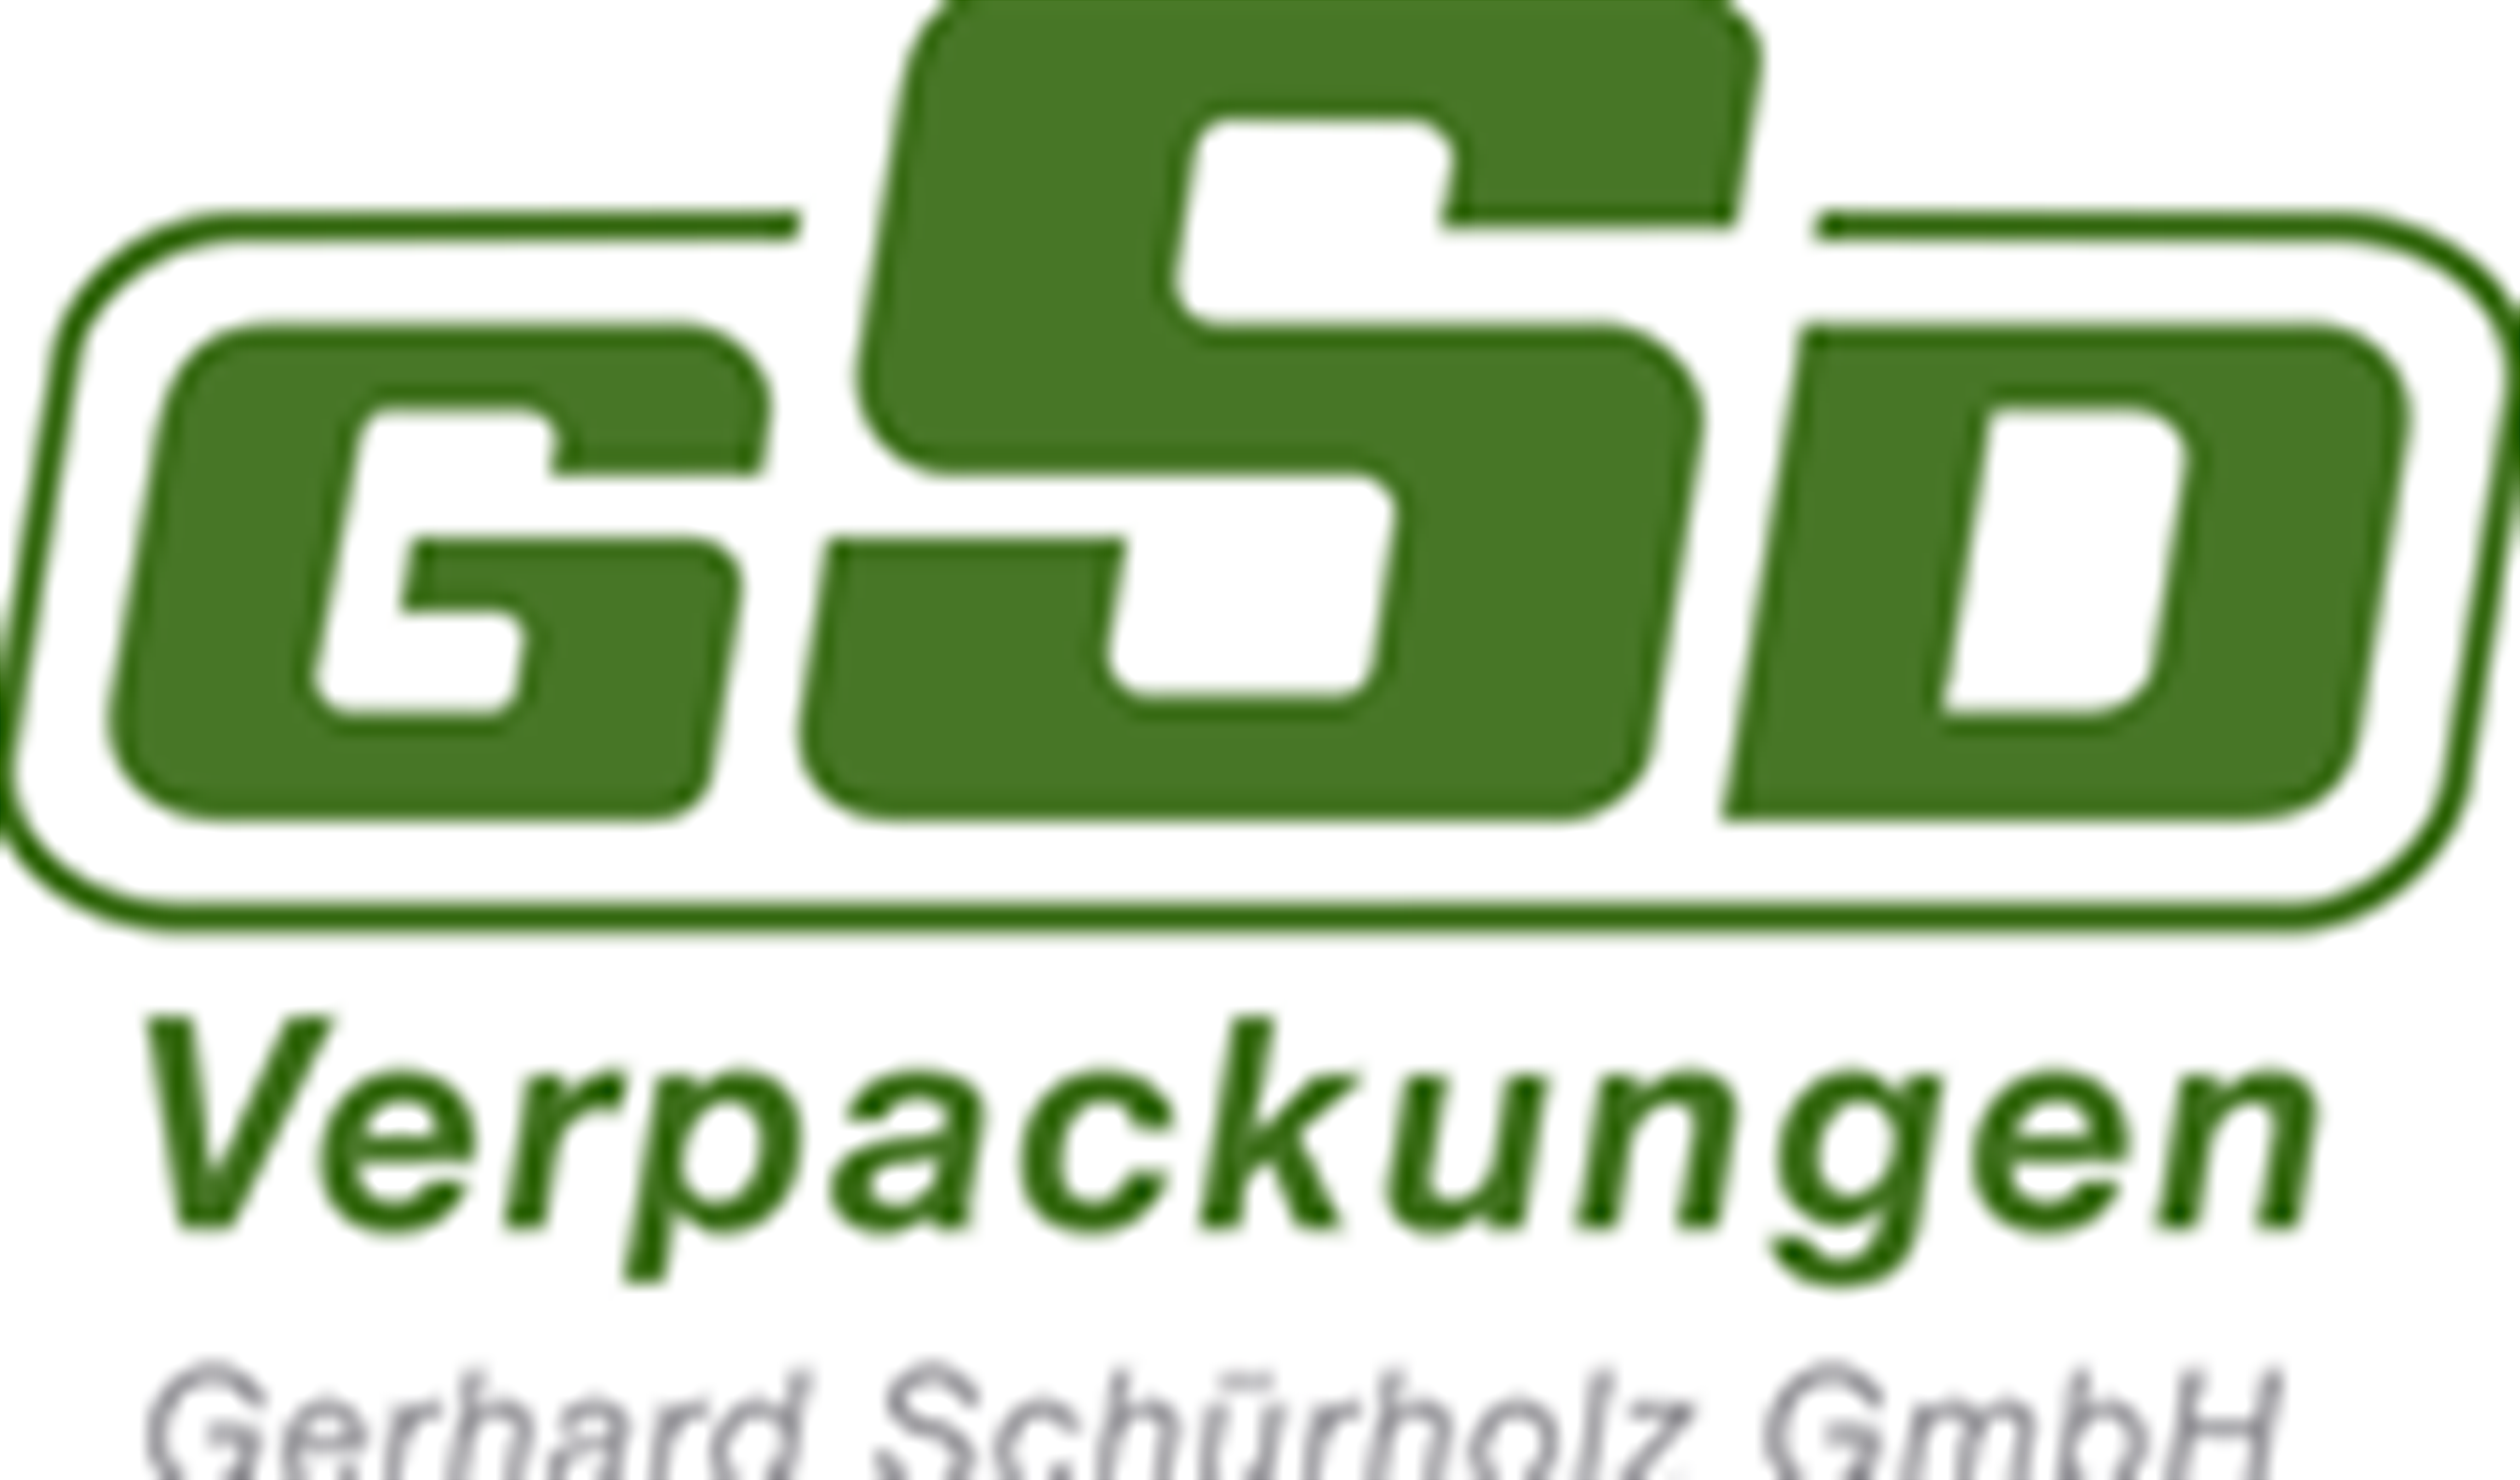 GSD Verpackungen Gerhard Schuerholz GmbH